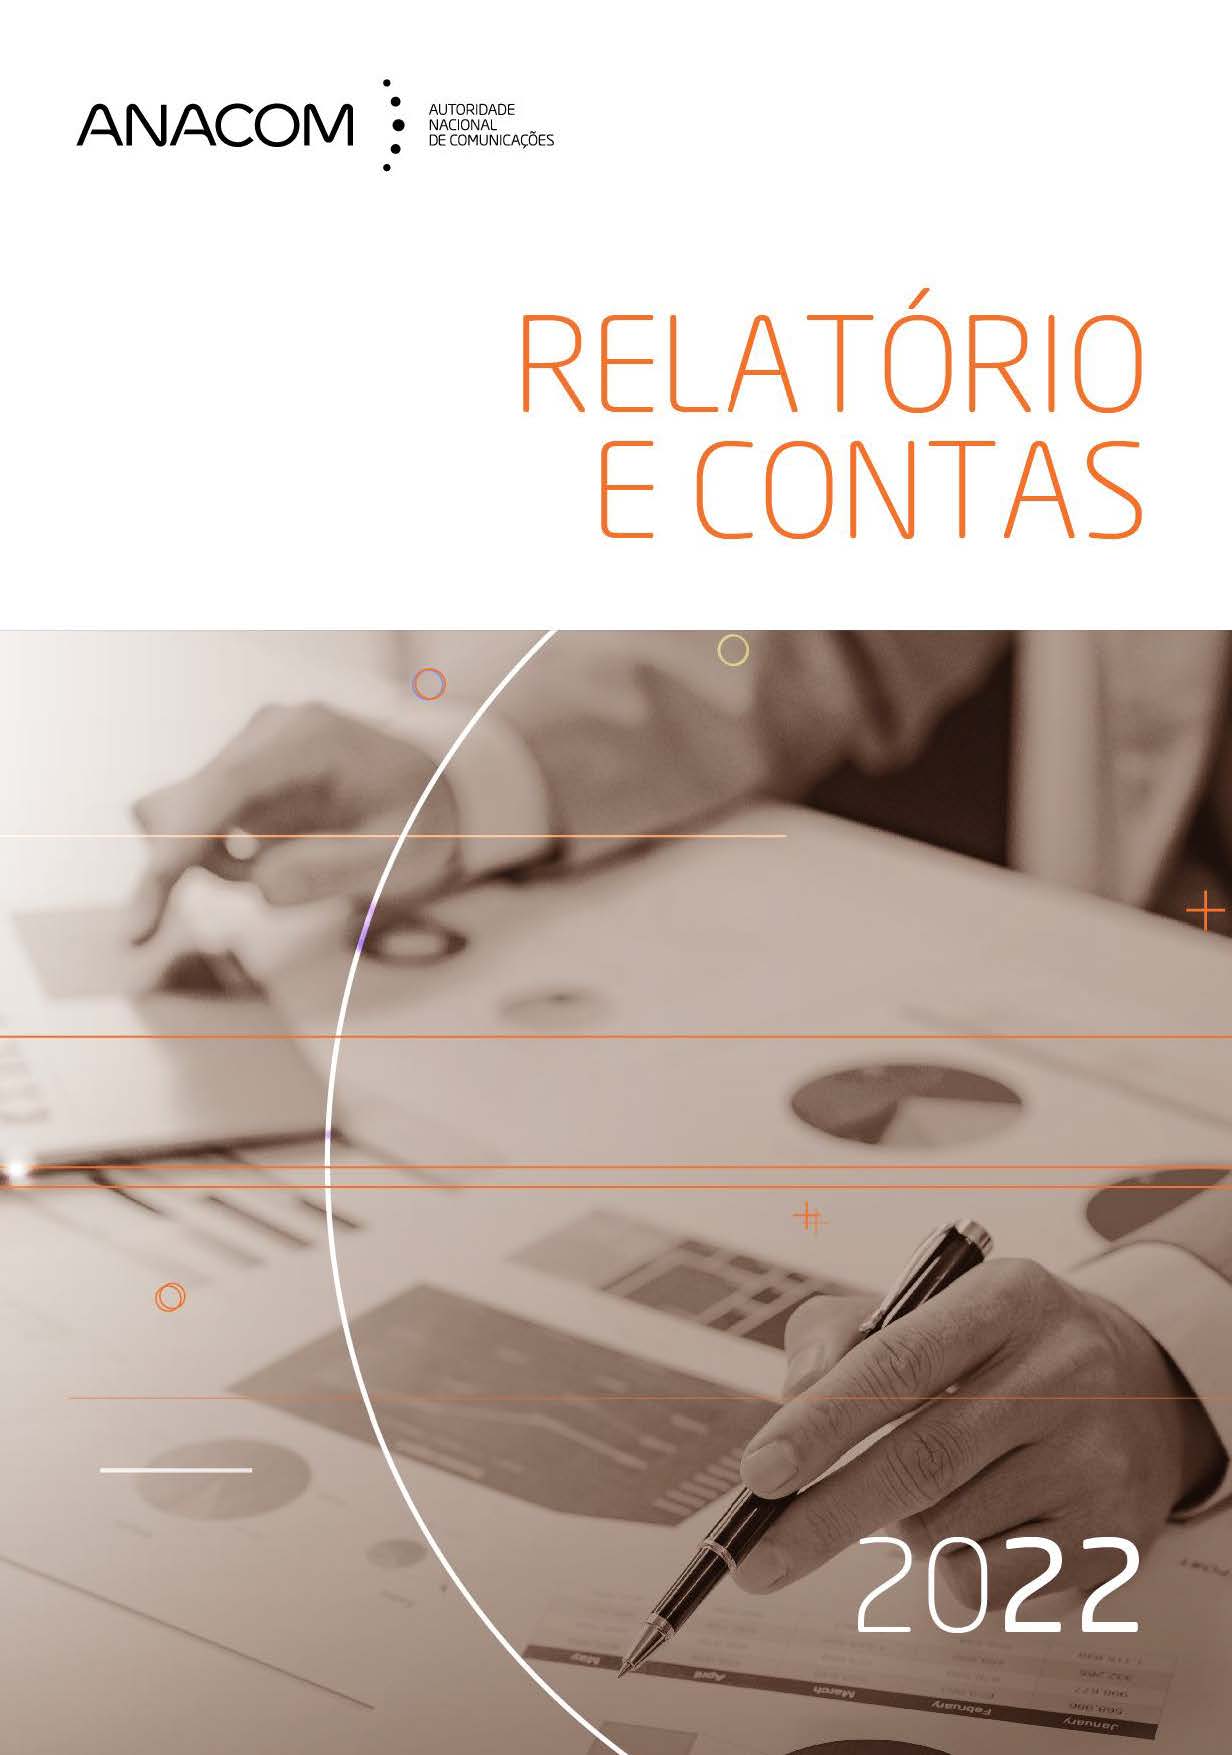 Capa do Relatório e Contas de 2022.